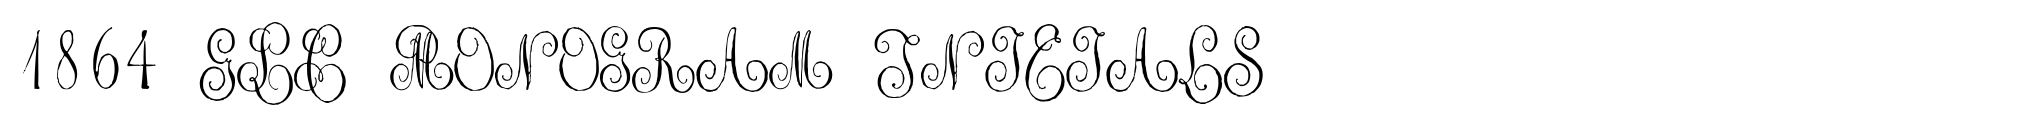 1864 GLC Monogram Initials image